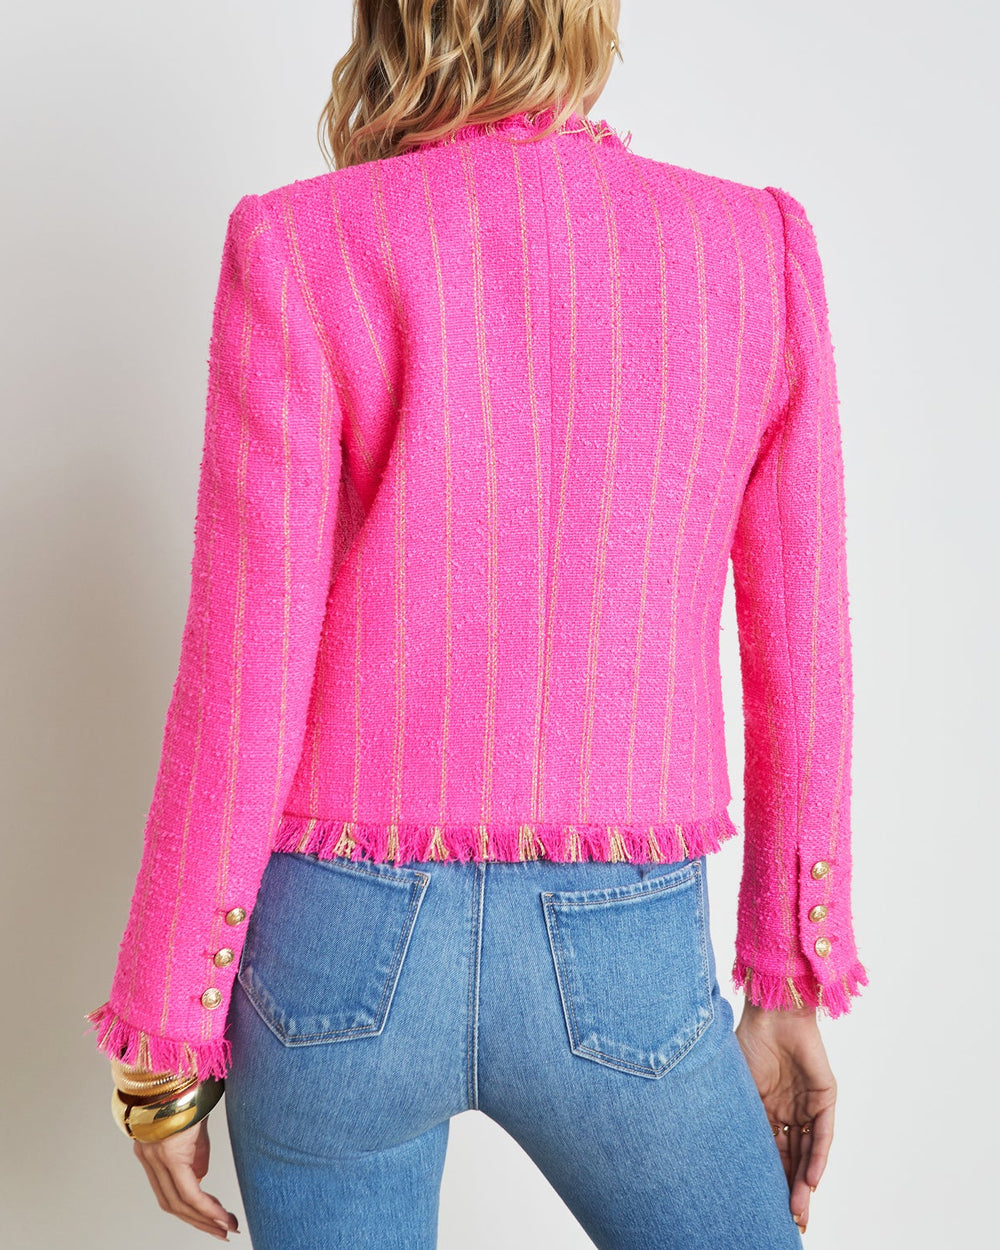 Shocking Pink and Gold Tinlee Jacket